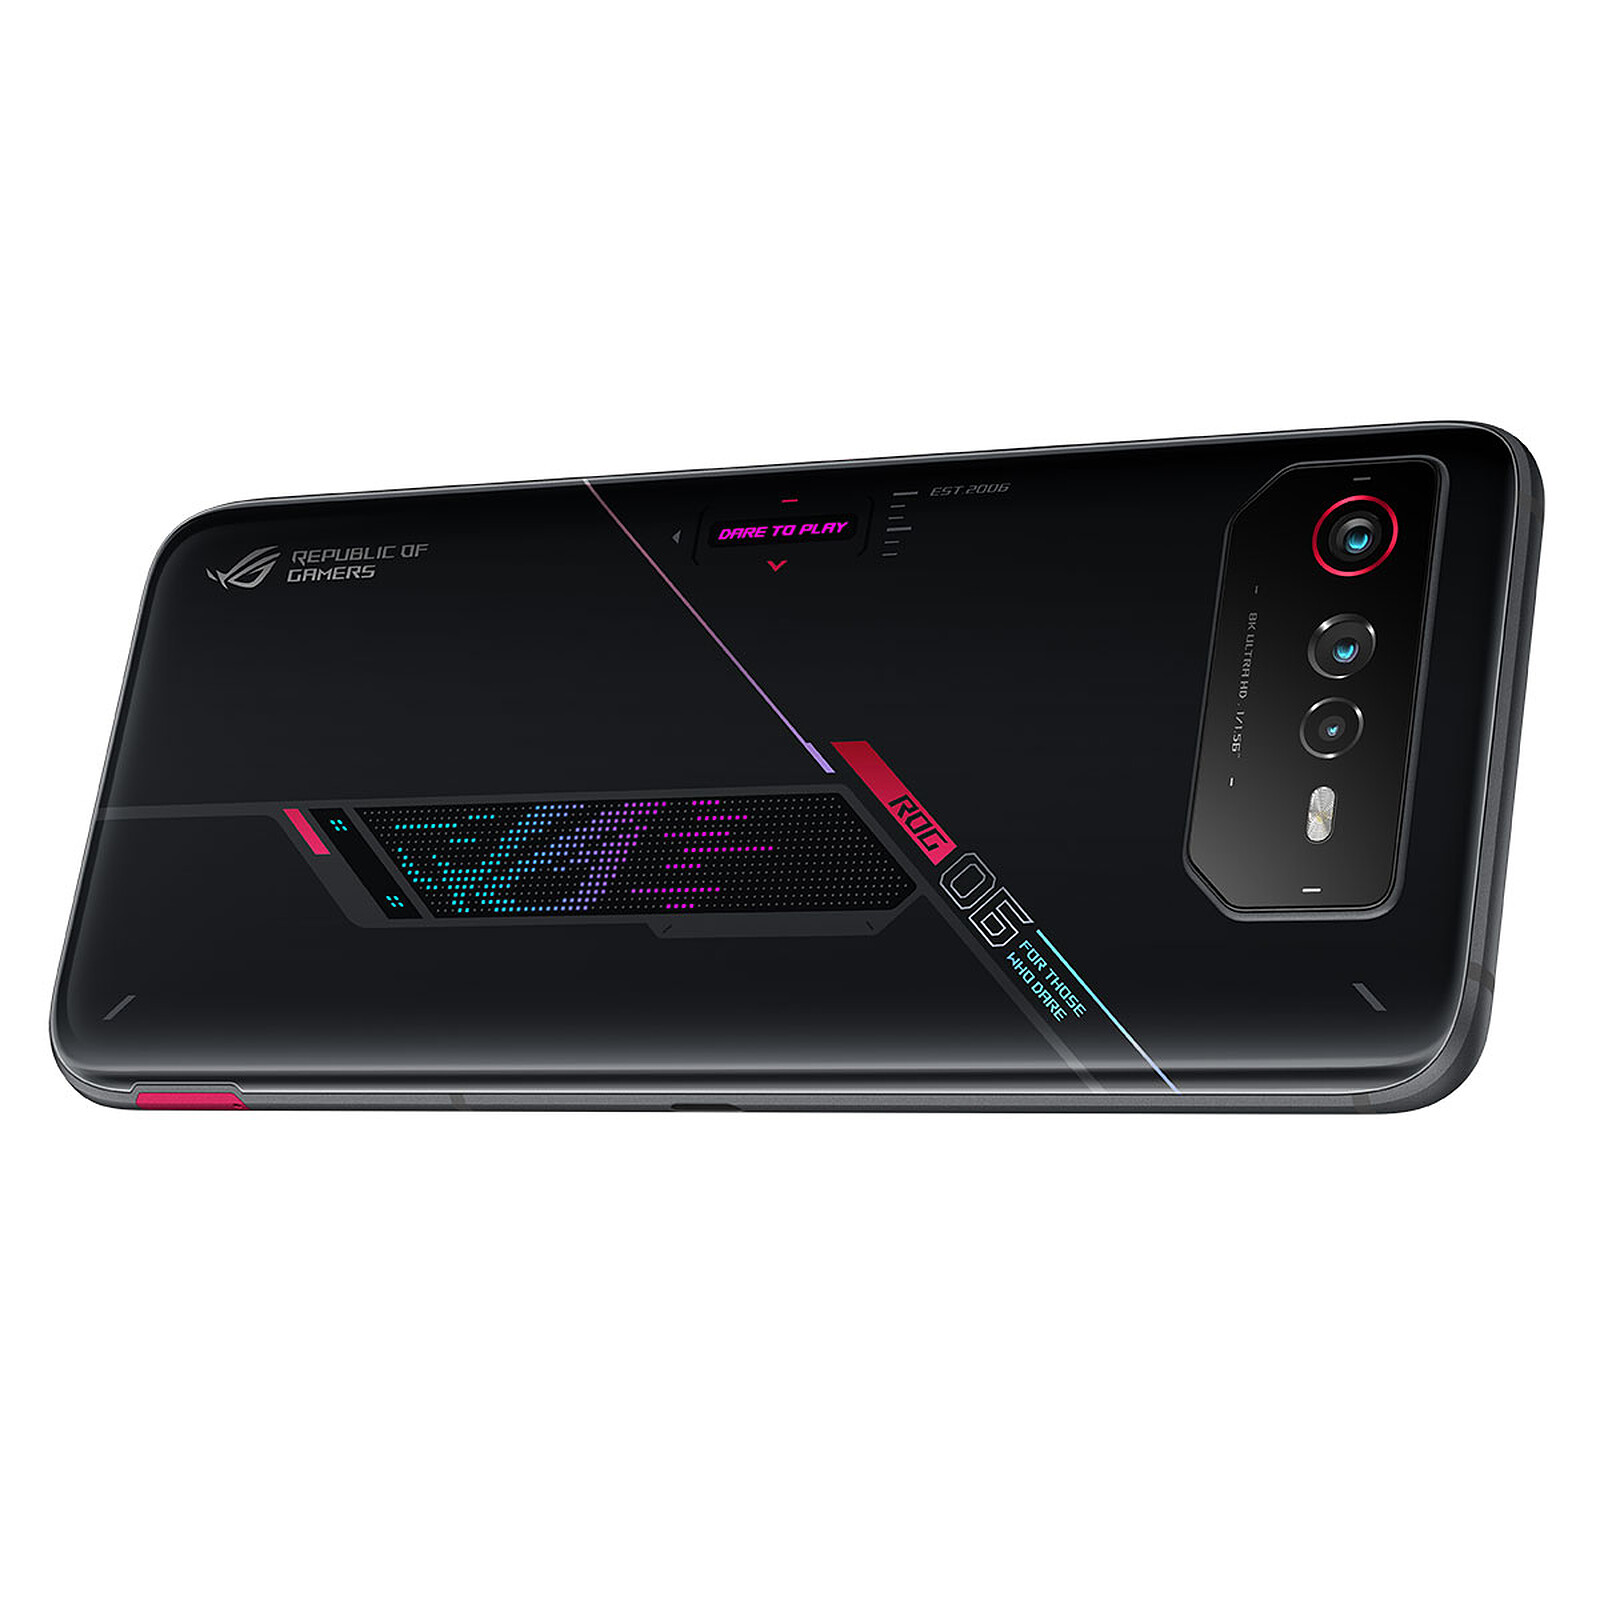 Nuevo ASUS ROG Phone 2: características, precio y ficha técnica